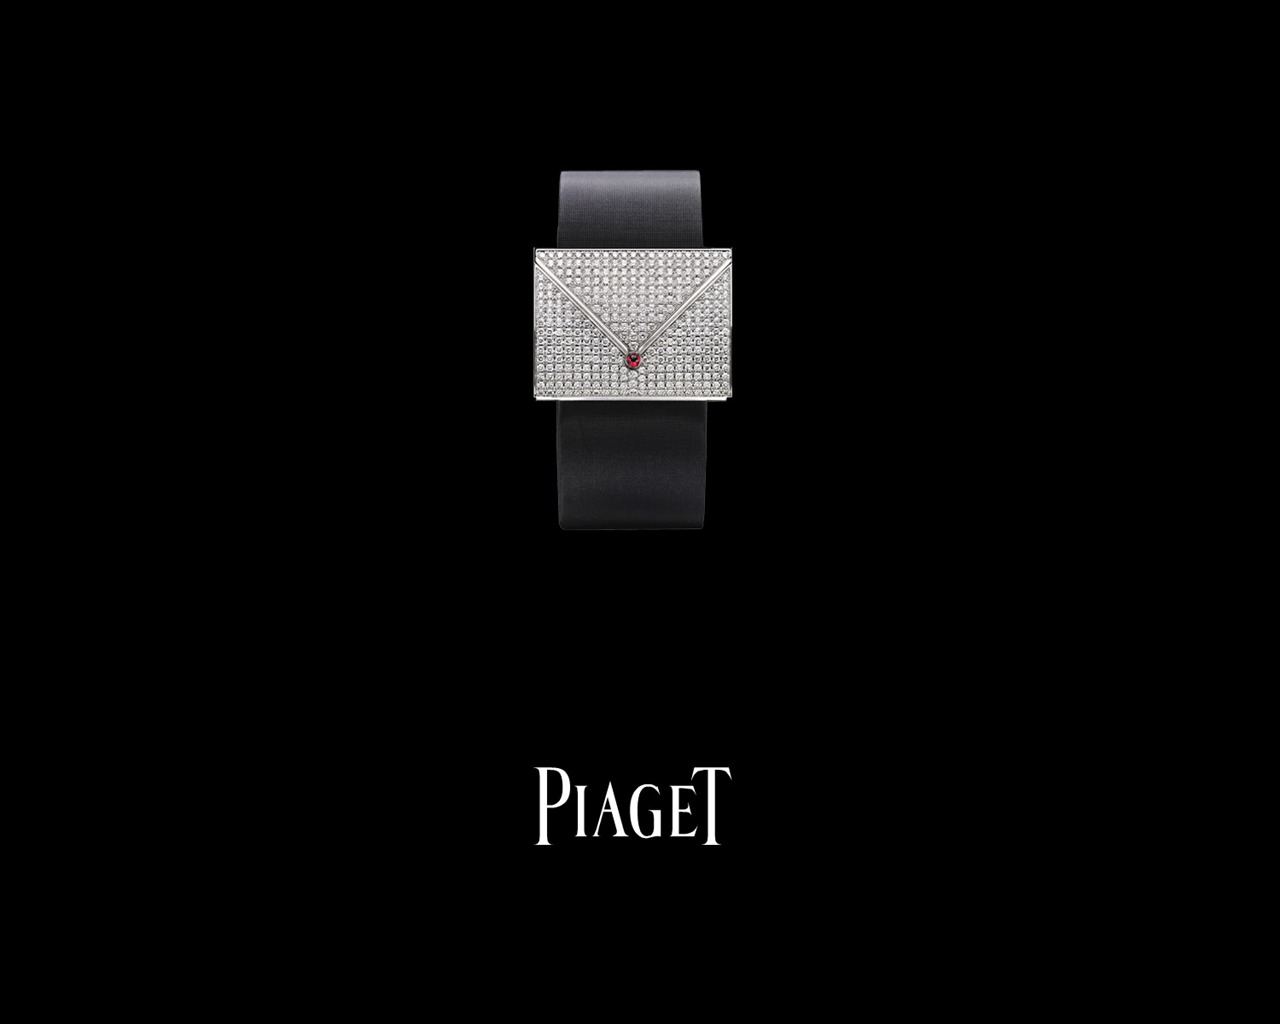 Piaget Diamante fondos de escritorio de reloj (1) #10 - 1280x1024